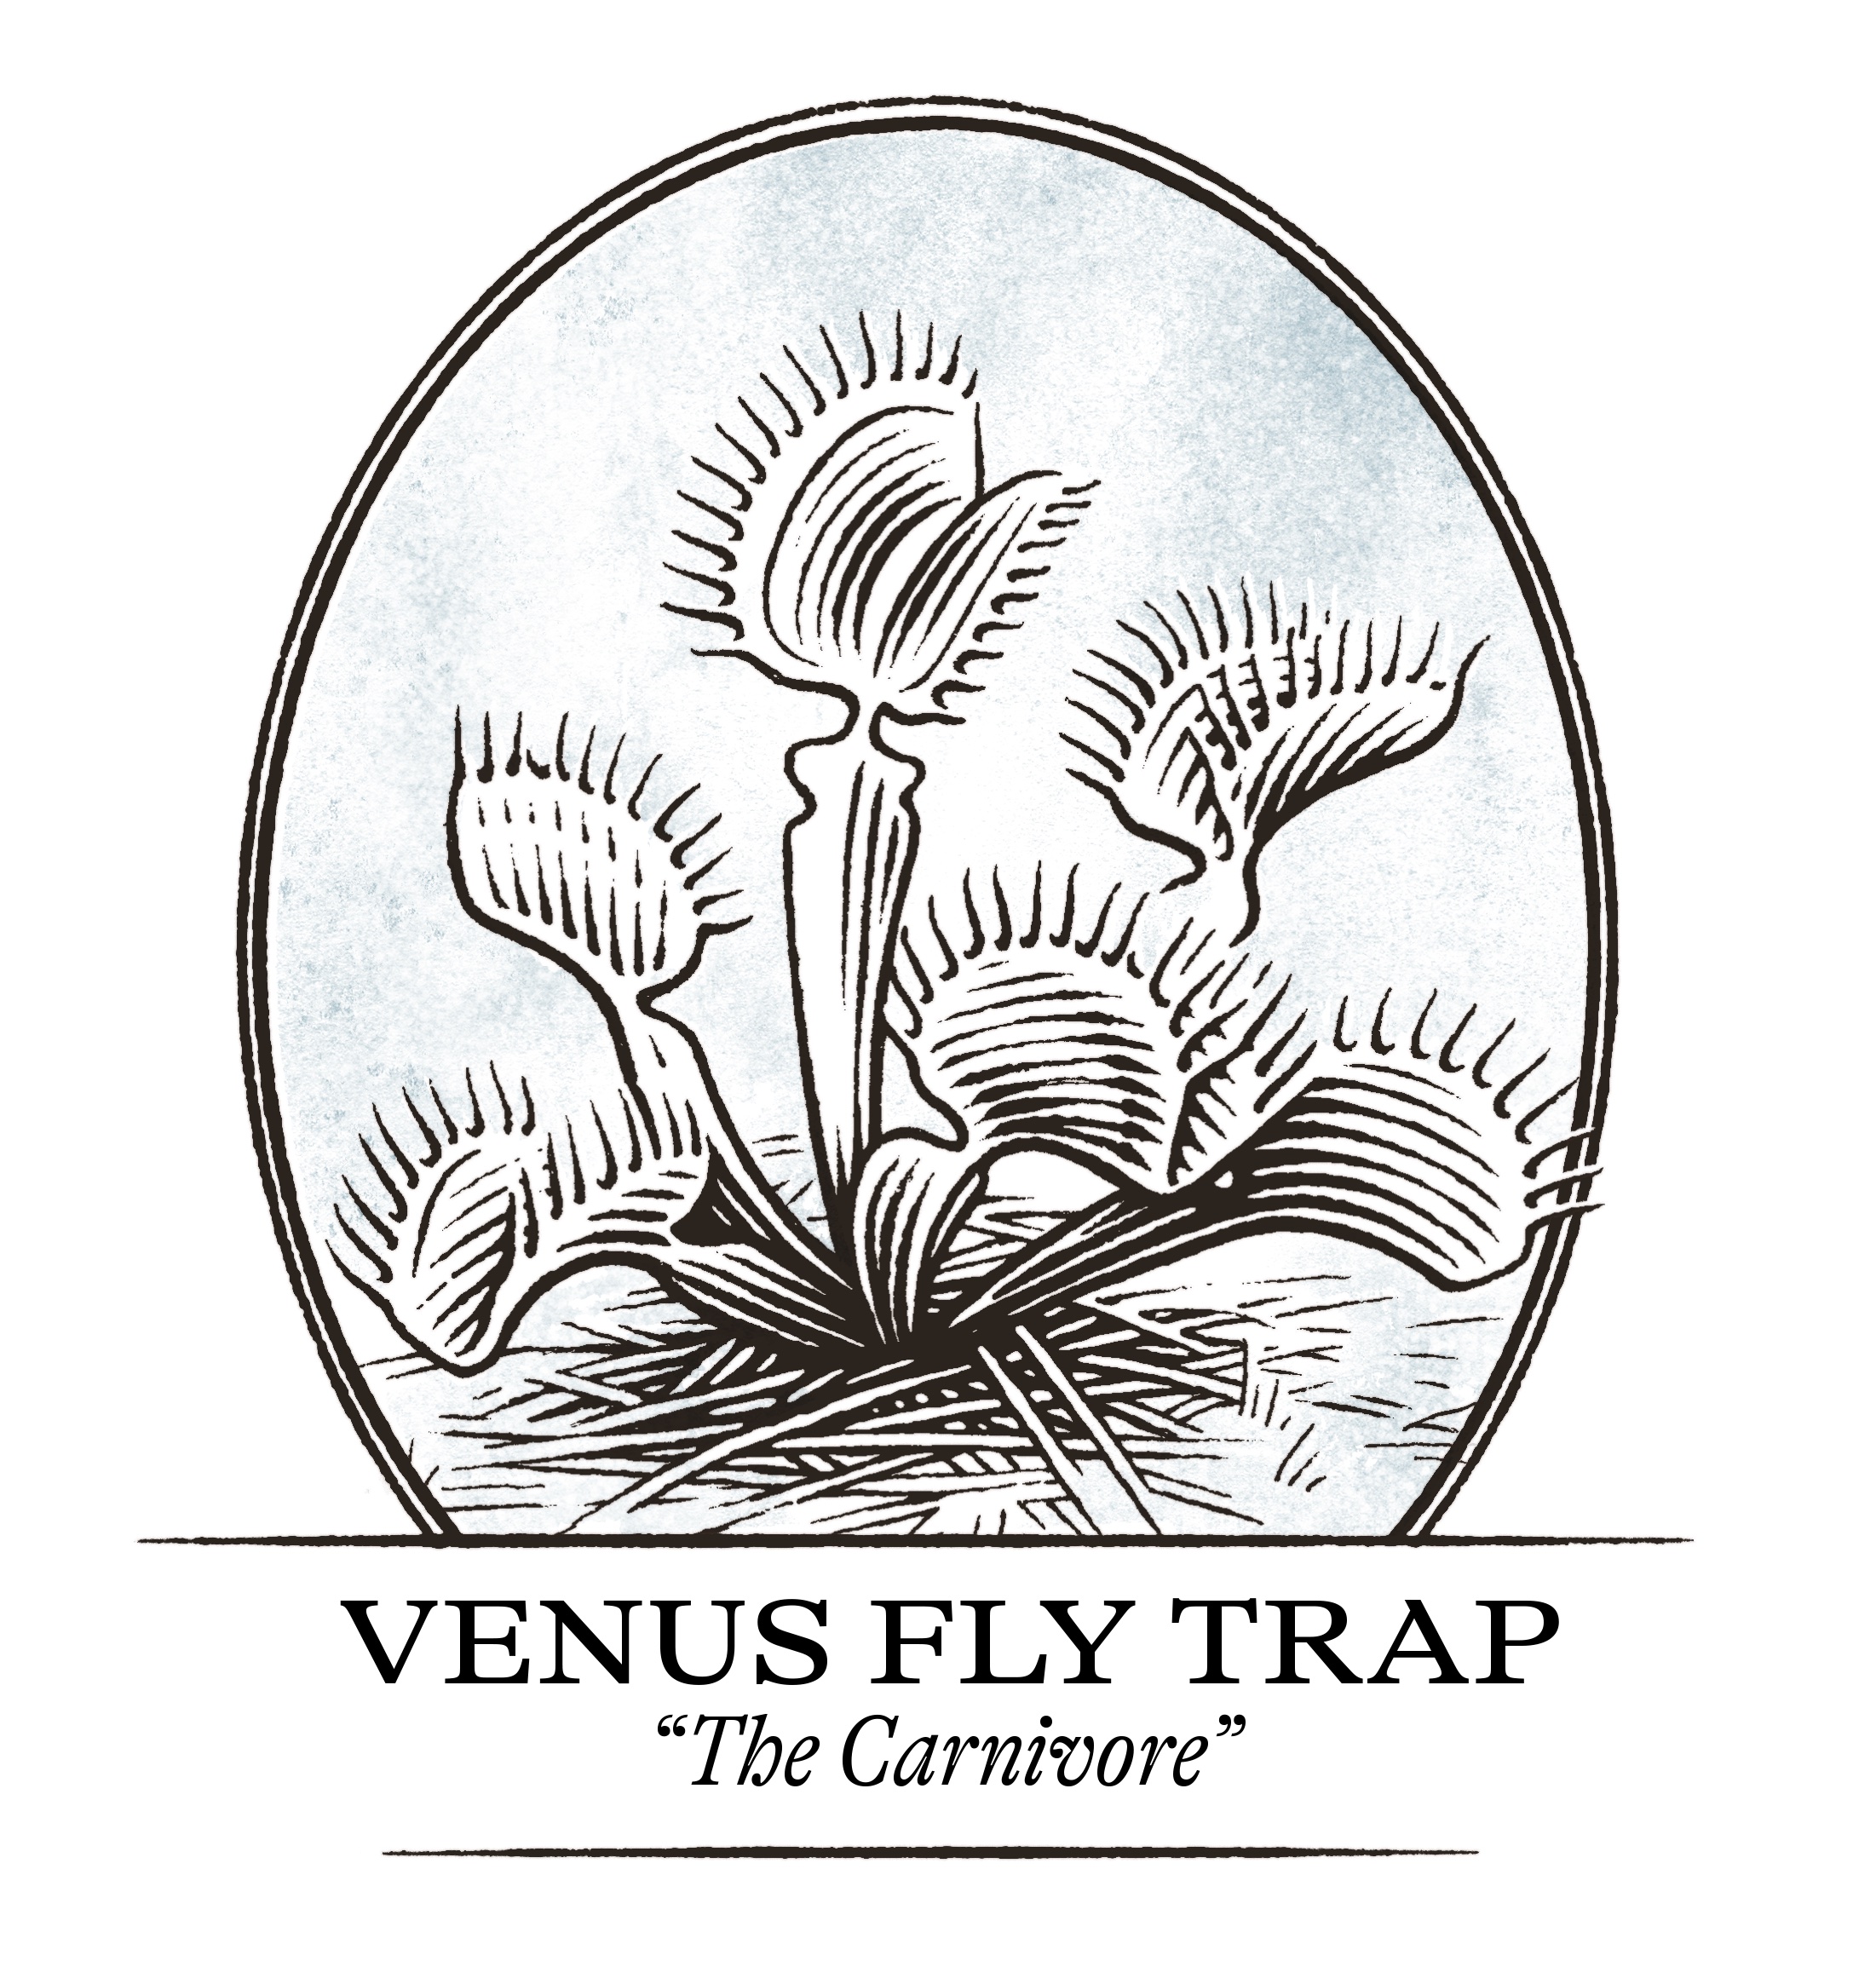 Venus fly trap illustration